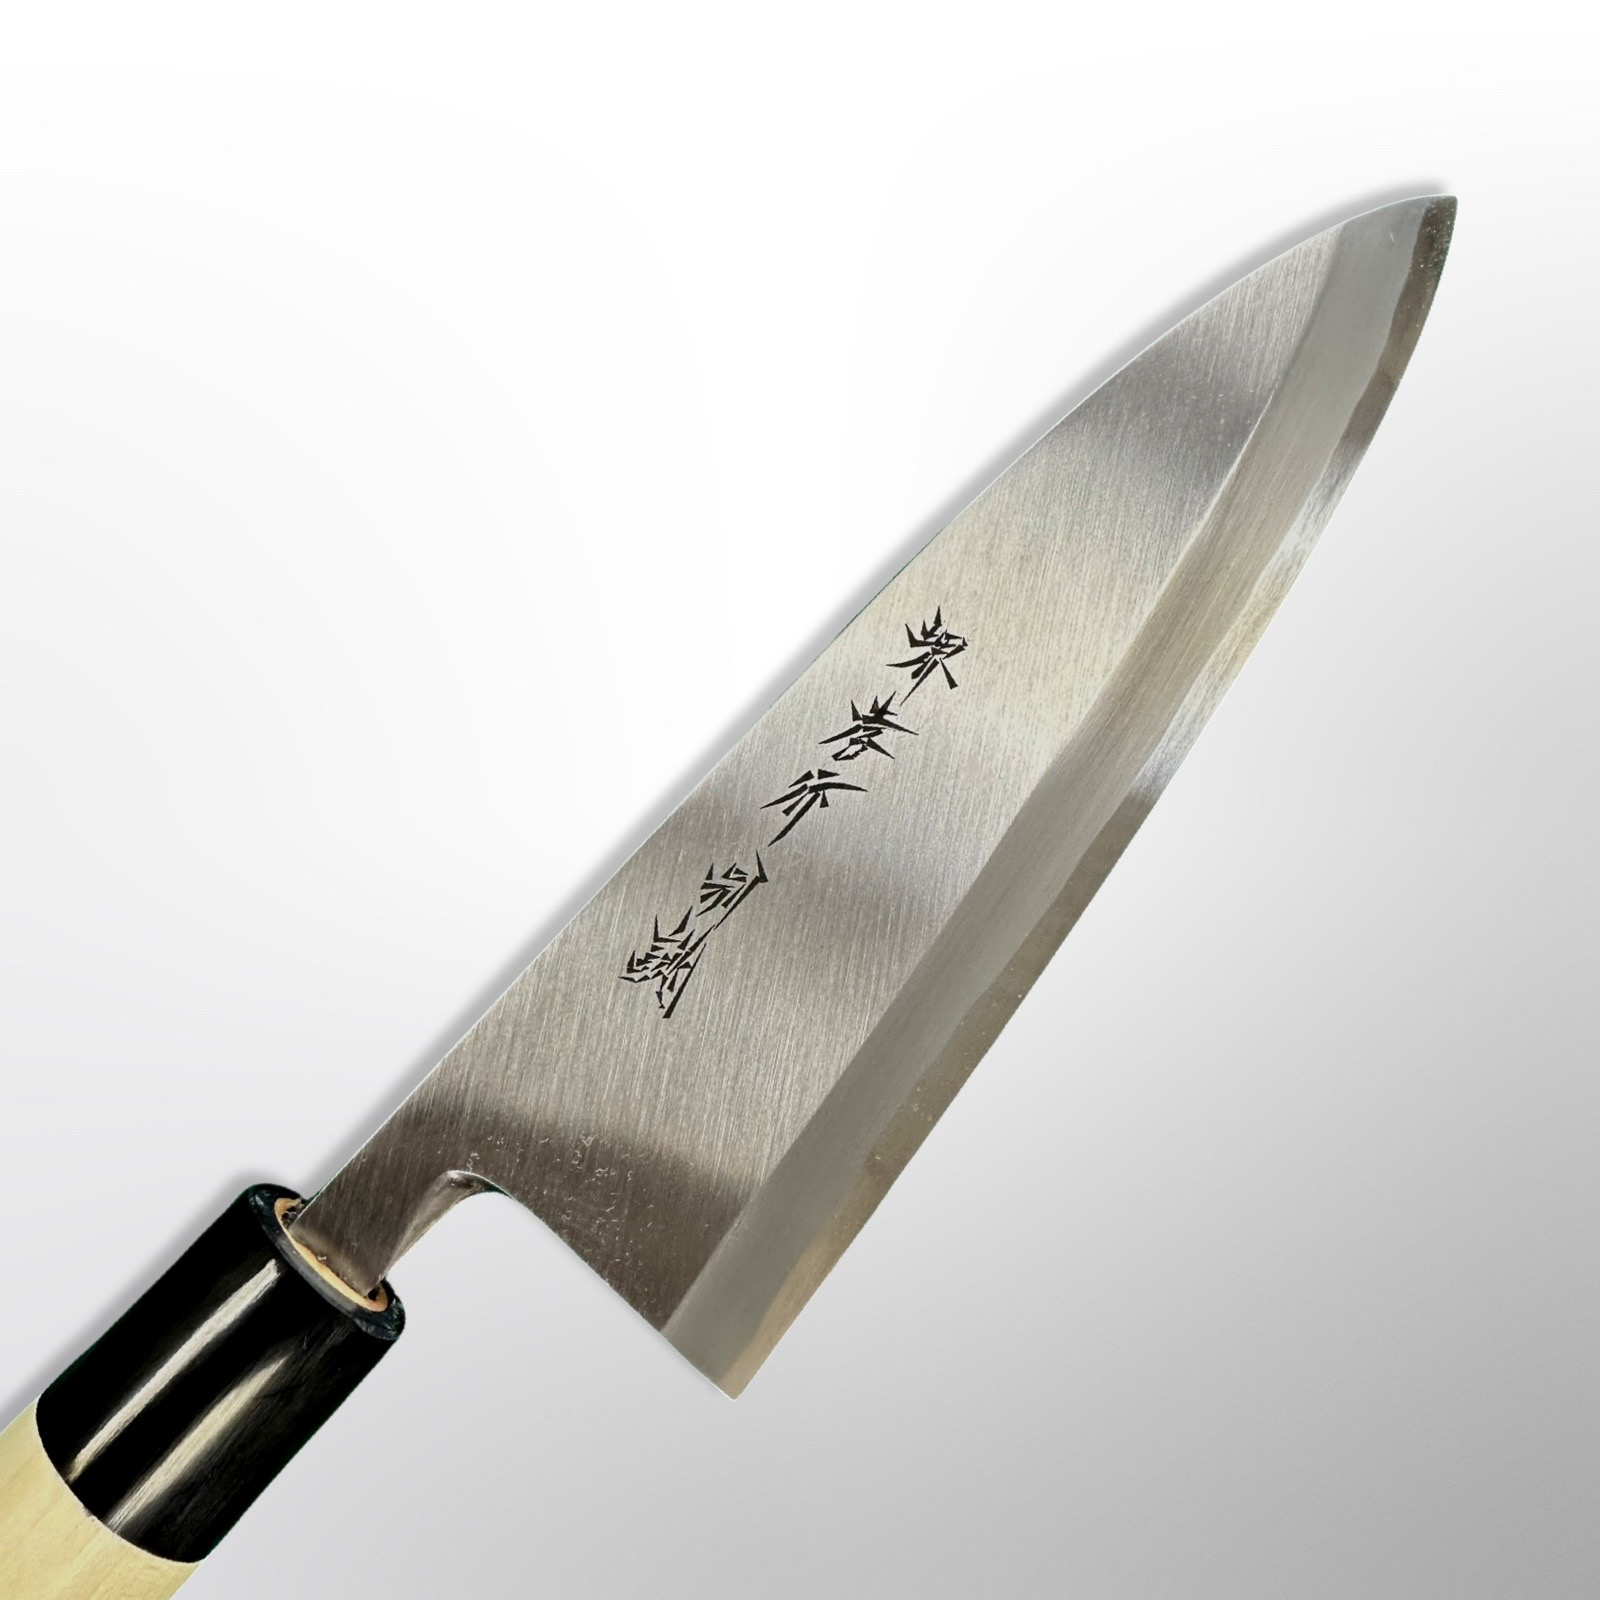 סכין פילוט דגים דֶּבָּה 195מ״מ פלדת פחמן יפנית White#2 עטופה פלדת אל-חלד גימור מט מלוטש סאקאיי טקיוקי יפן 03038